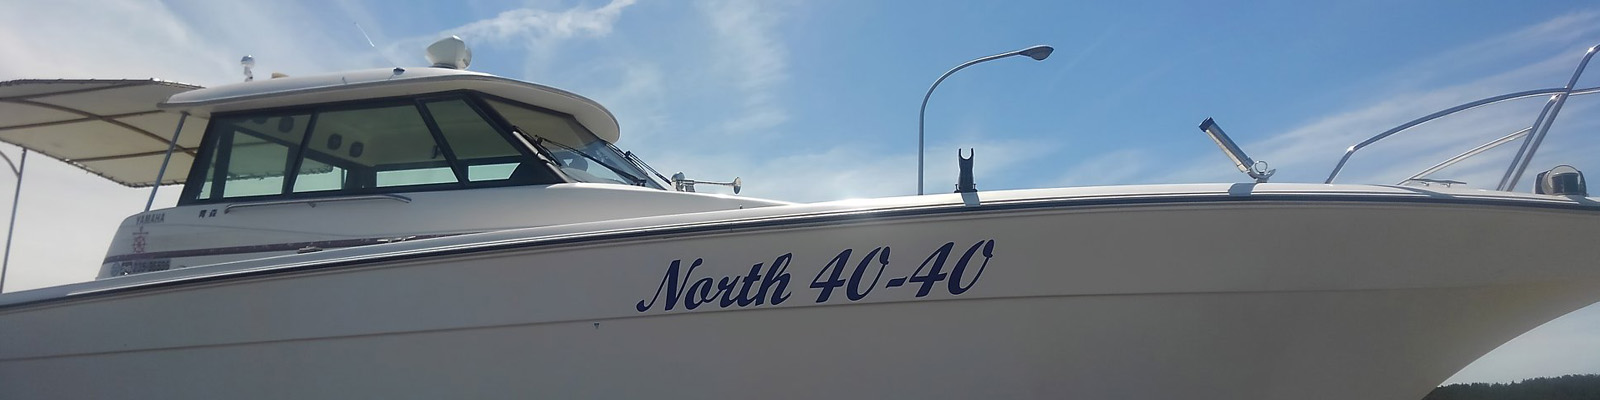 遊漁船 North40-40